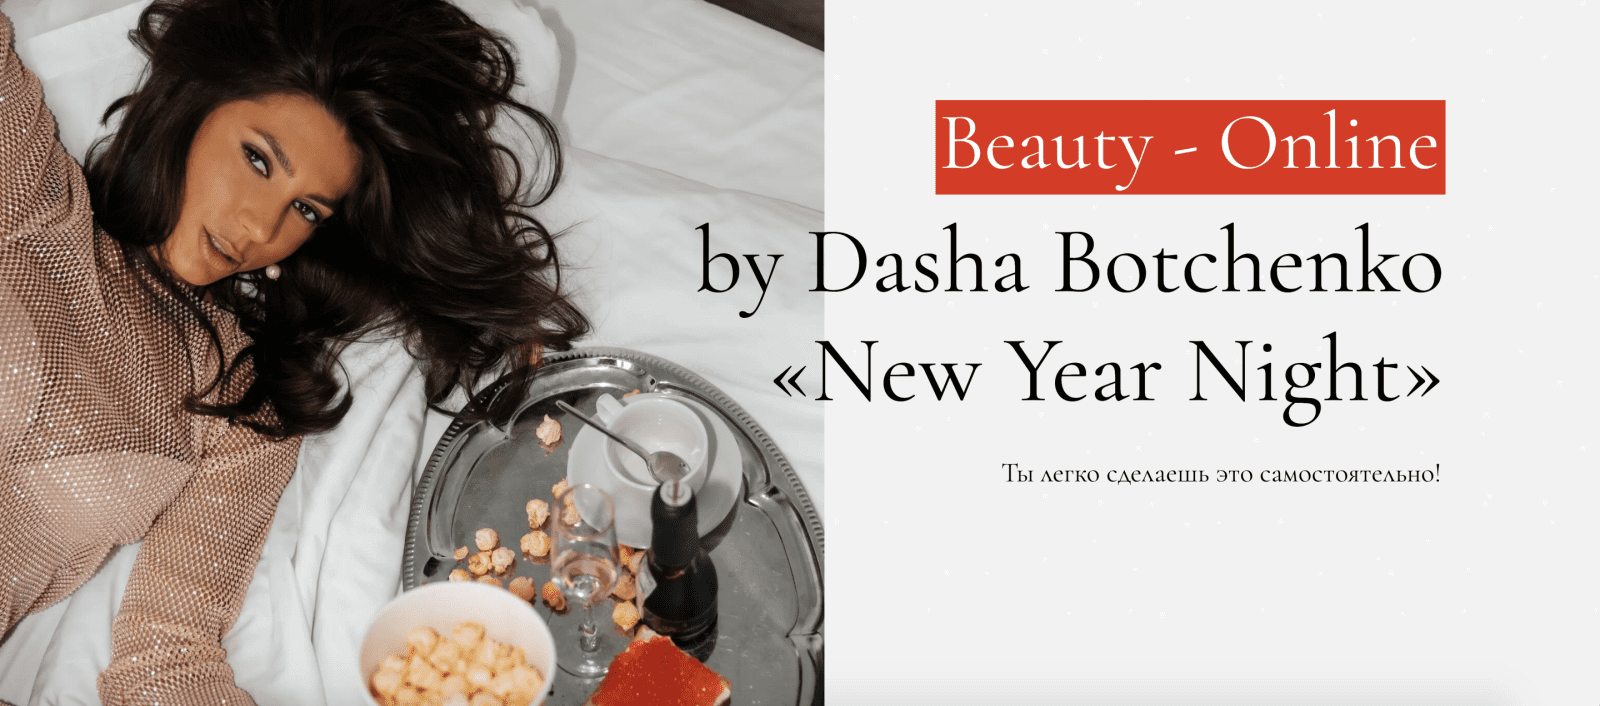 Изображение [Дарья Ботченко] Beauty-Оnline «New Year Night» (2021) в посте 247354